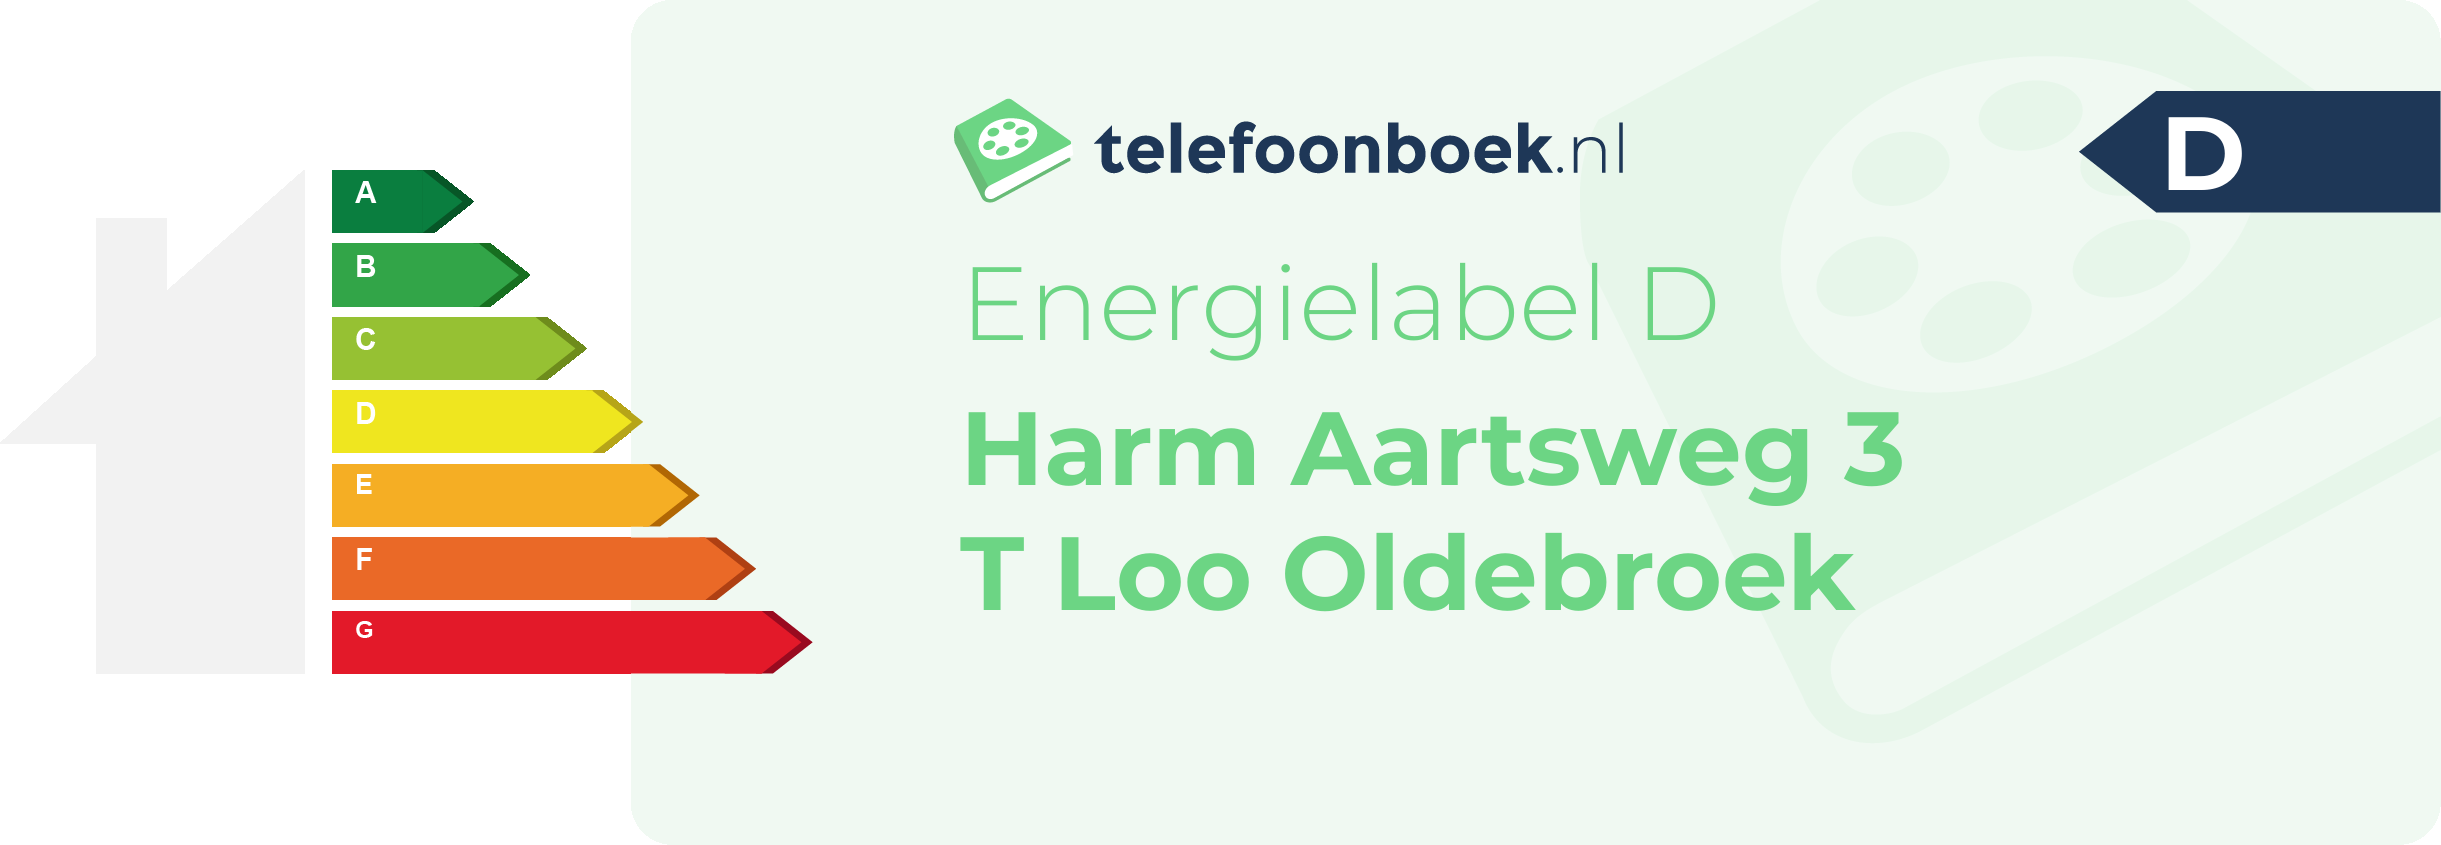 Energielabel Harm Aartsweg 3 T Loo Oldebroek